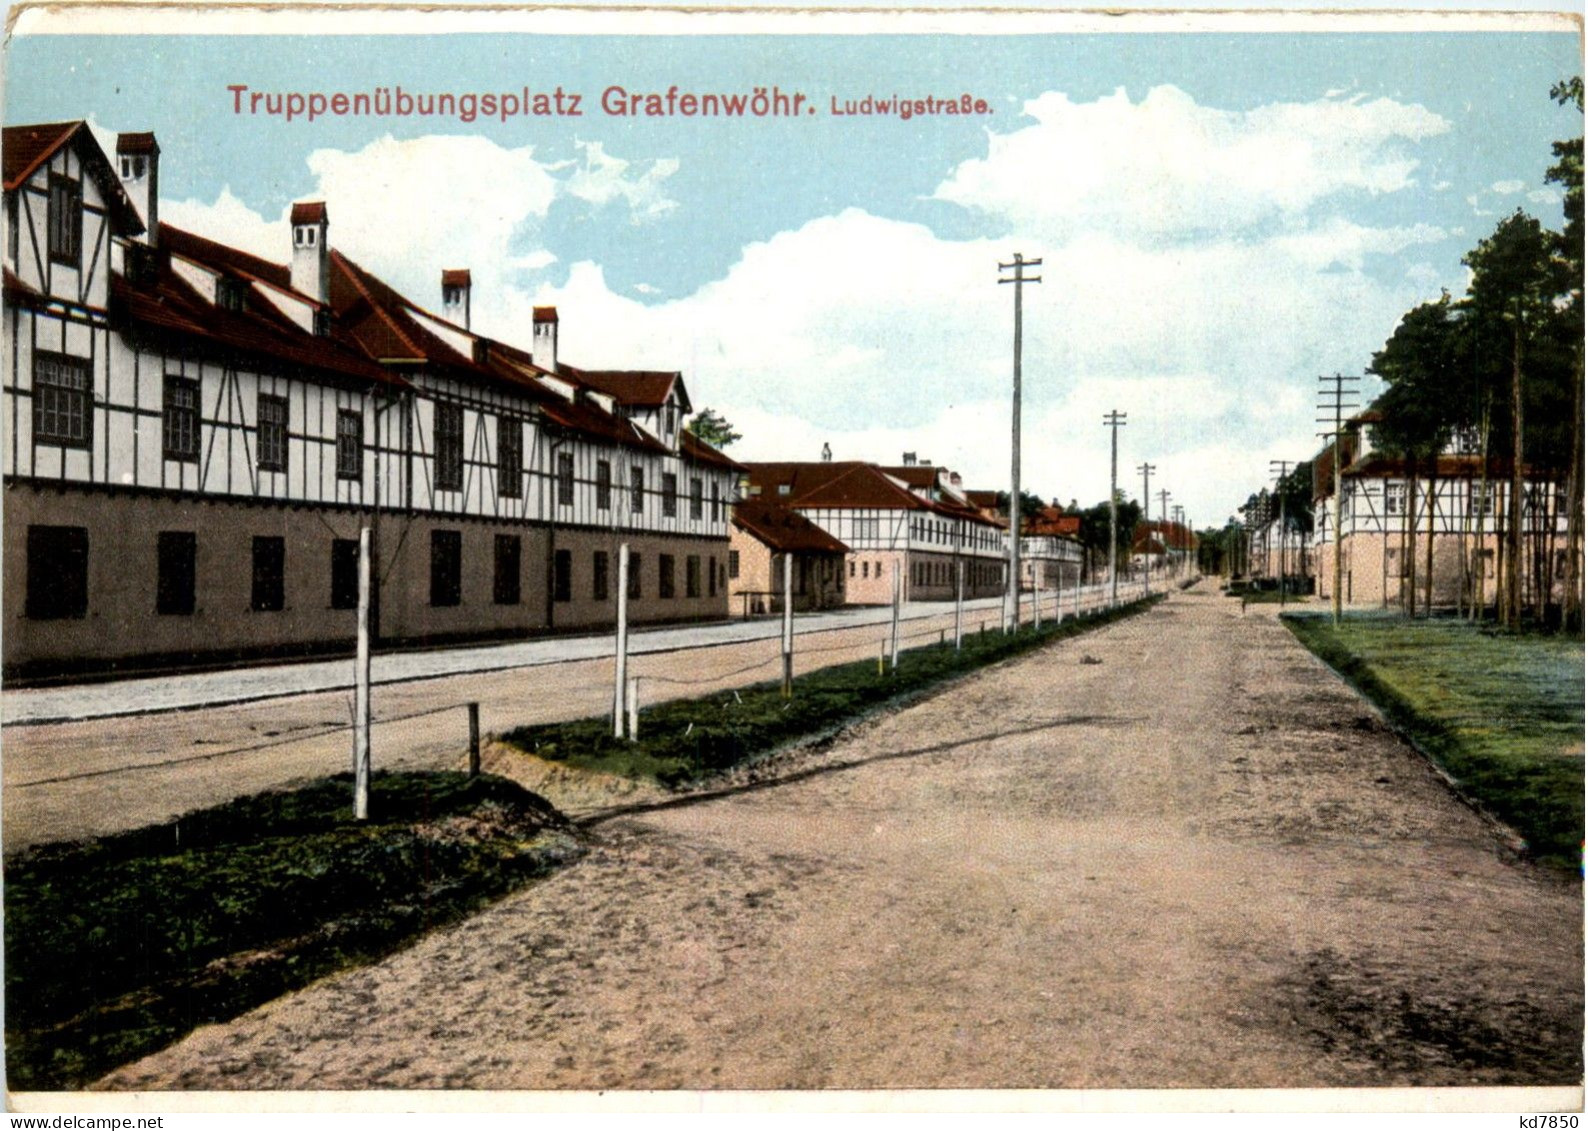 Bayern/Grafenwöhr - Truppenübungsplatz - Ludwigstrasse - Grafenwöhr